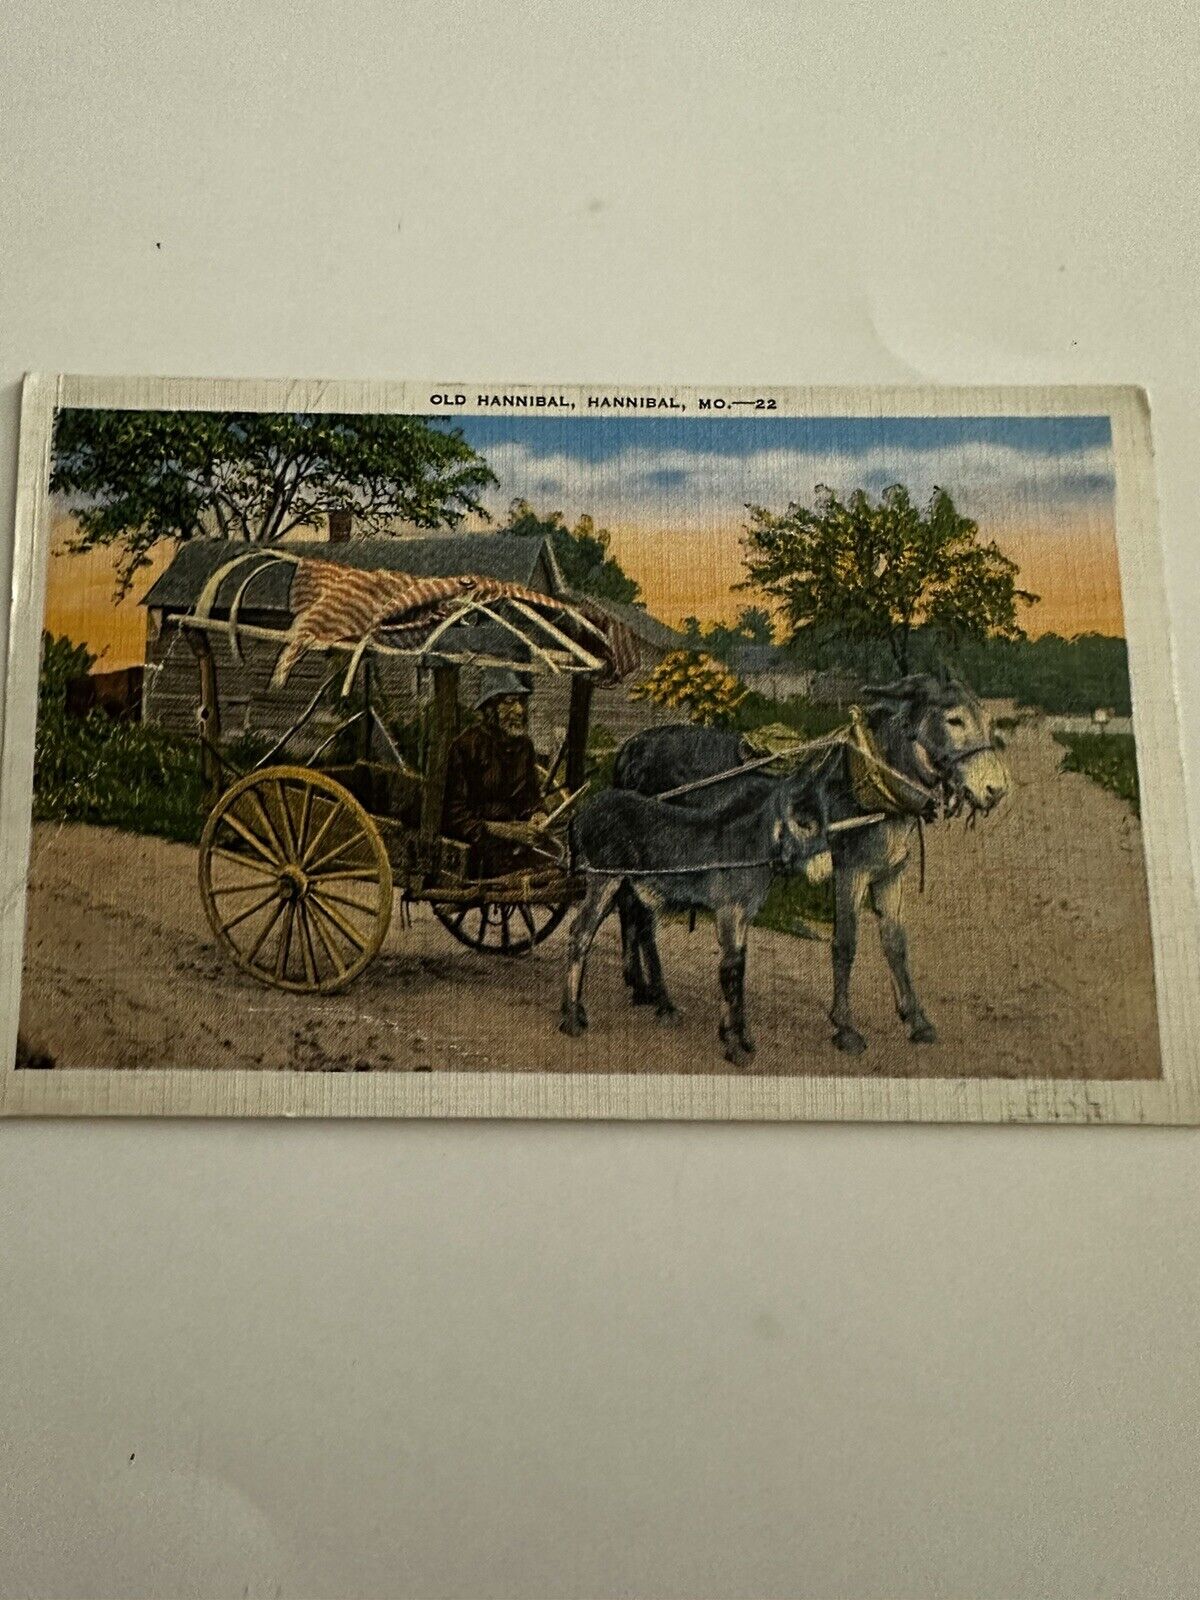 Old Hannibal Hannibal MO Antique Vintage Postcard